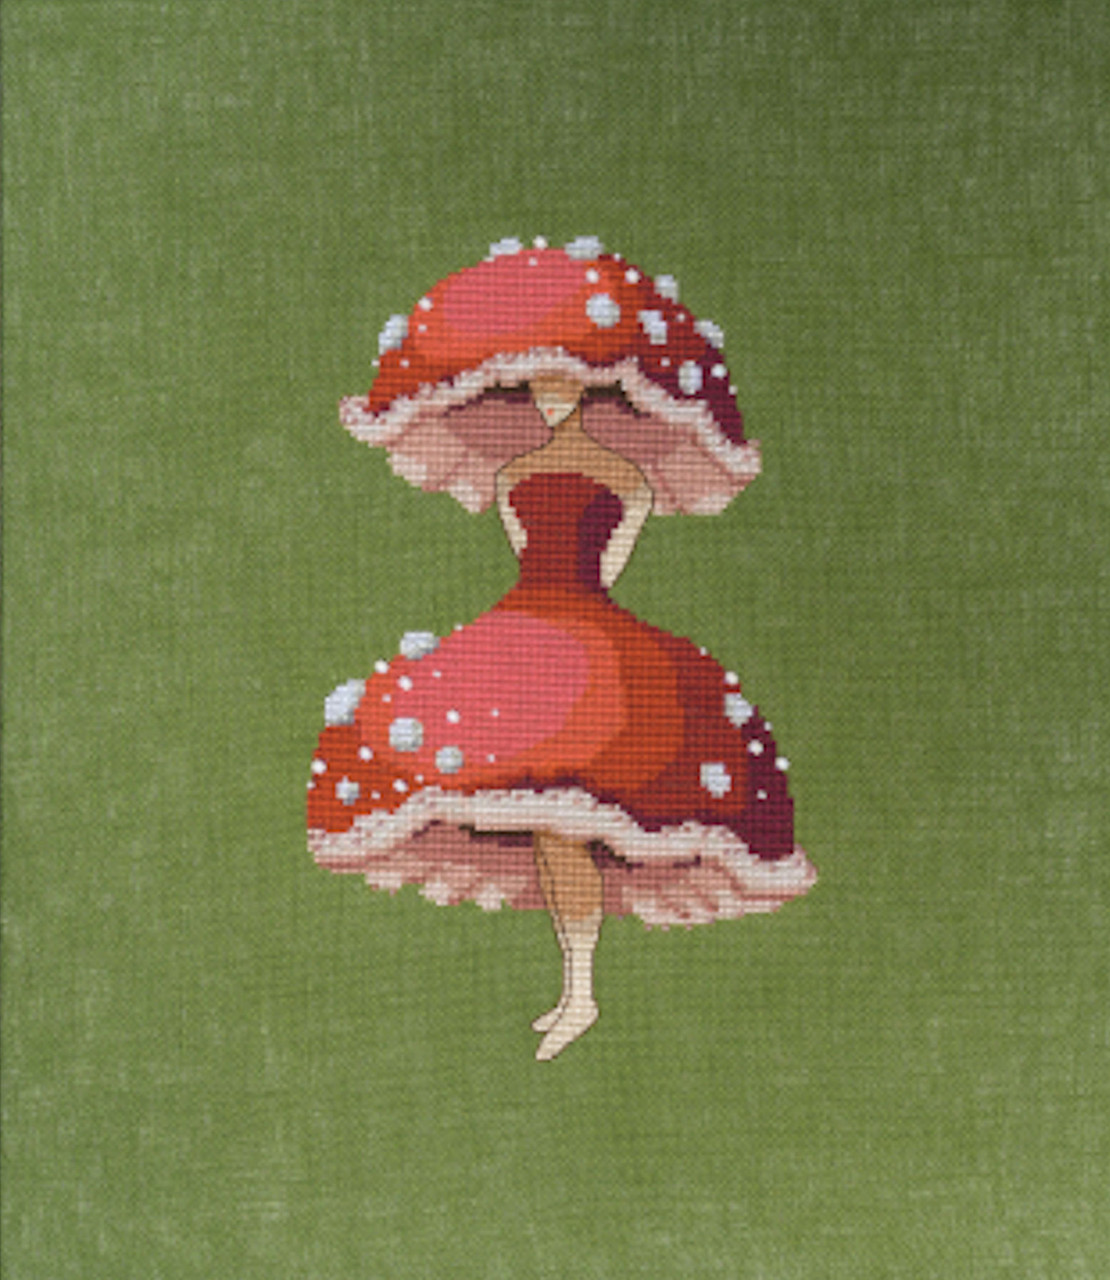 Nora Corbett Embellishment Pack  - Miss Forest Mushroom